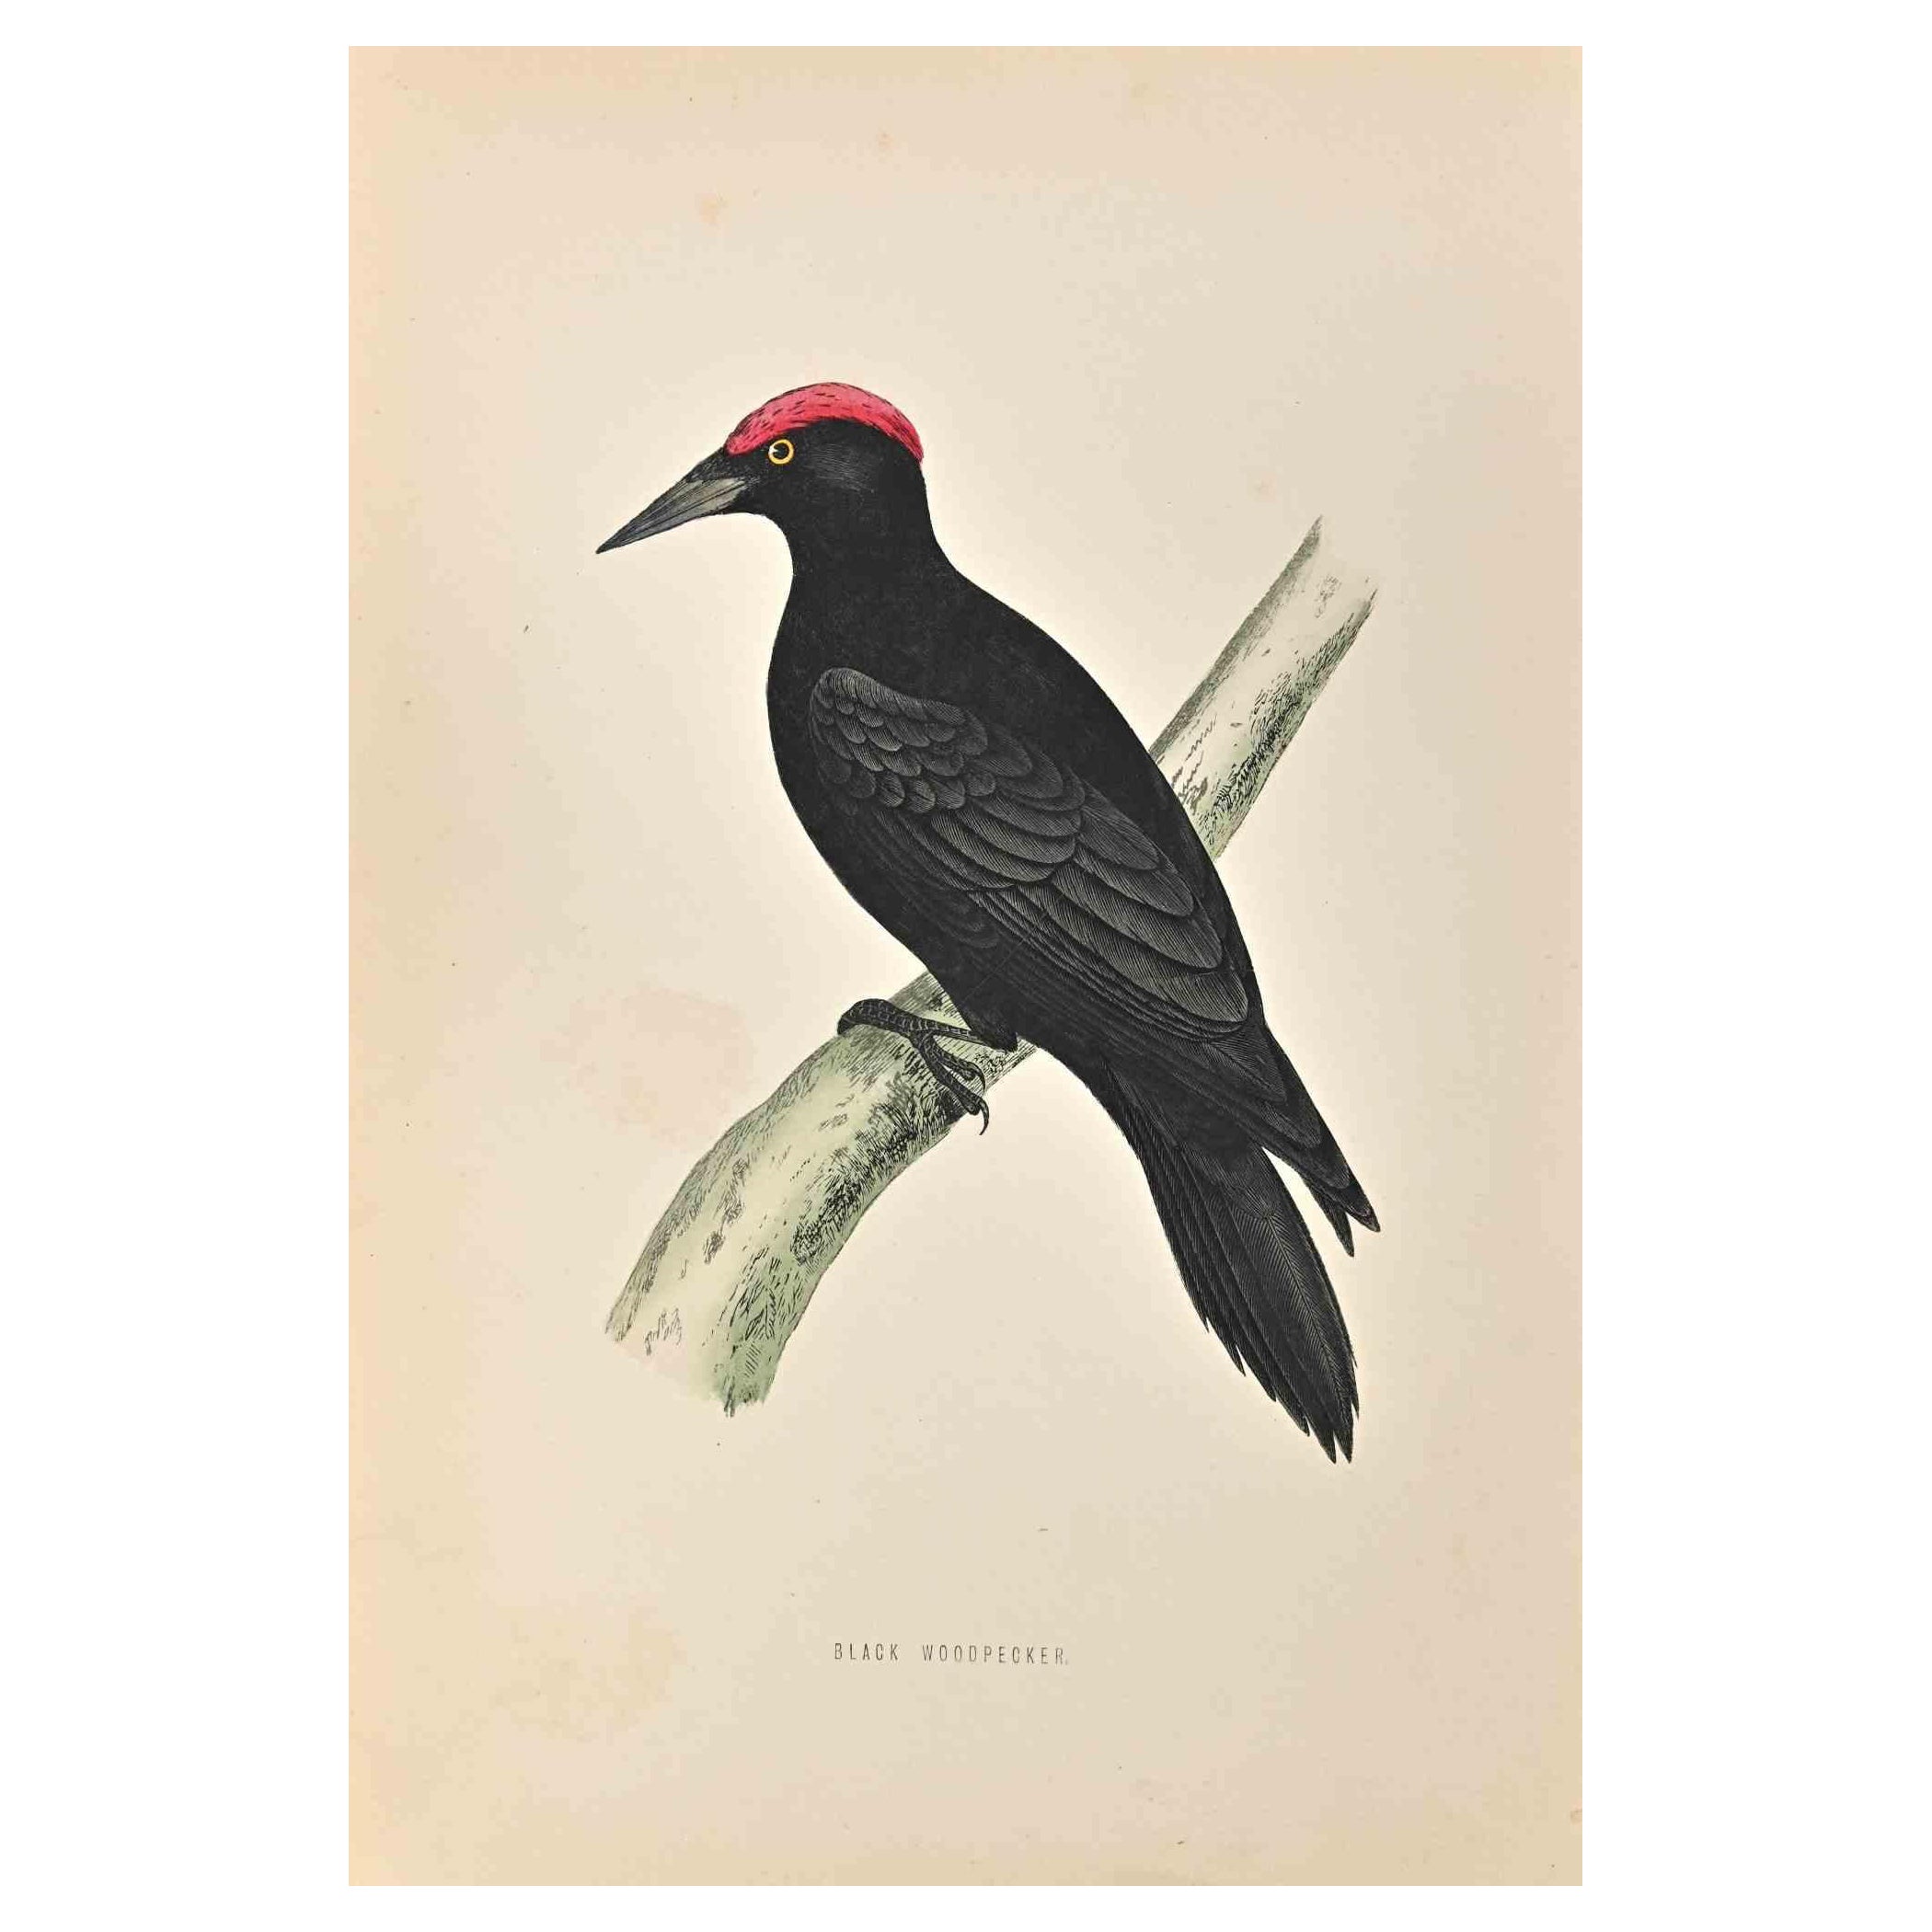 Le pic noir est une œuvre d'art moderne réalisée en 1870 par l'artiste britannique Alexander Francis Lydon (1836-1917) . 

Gravure sur bois, colorée à la main, publiée par London, Bell & Sons, 1870.  Nom de l'oiseau imprimé dans la plaque. Cette